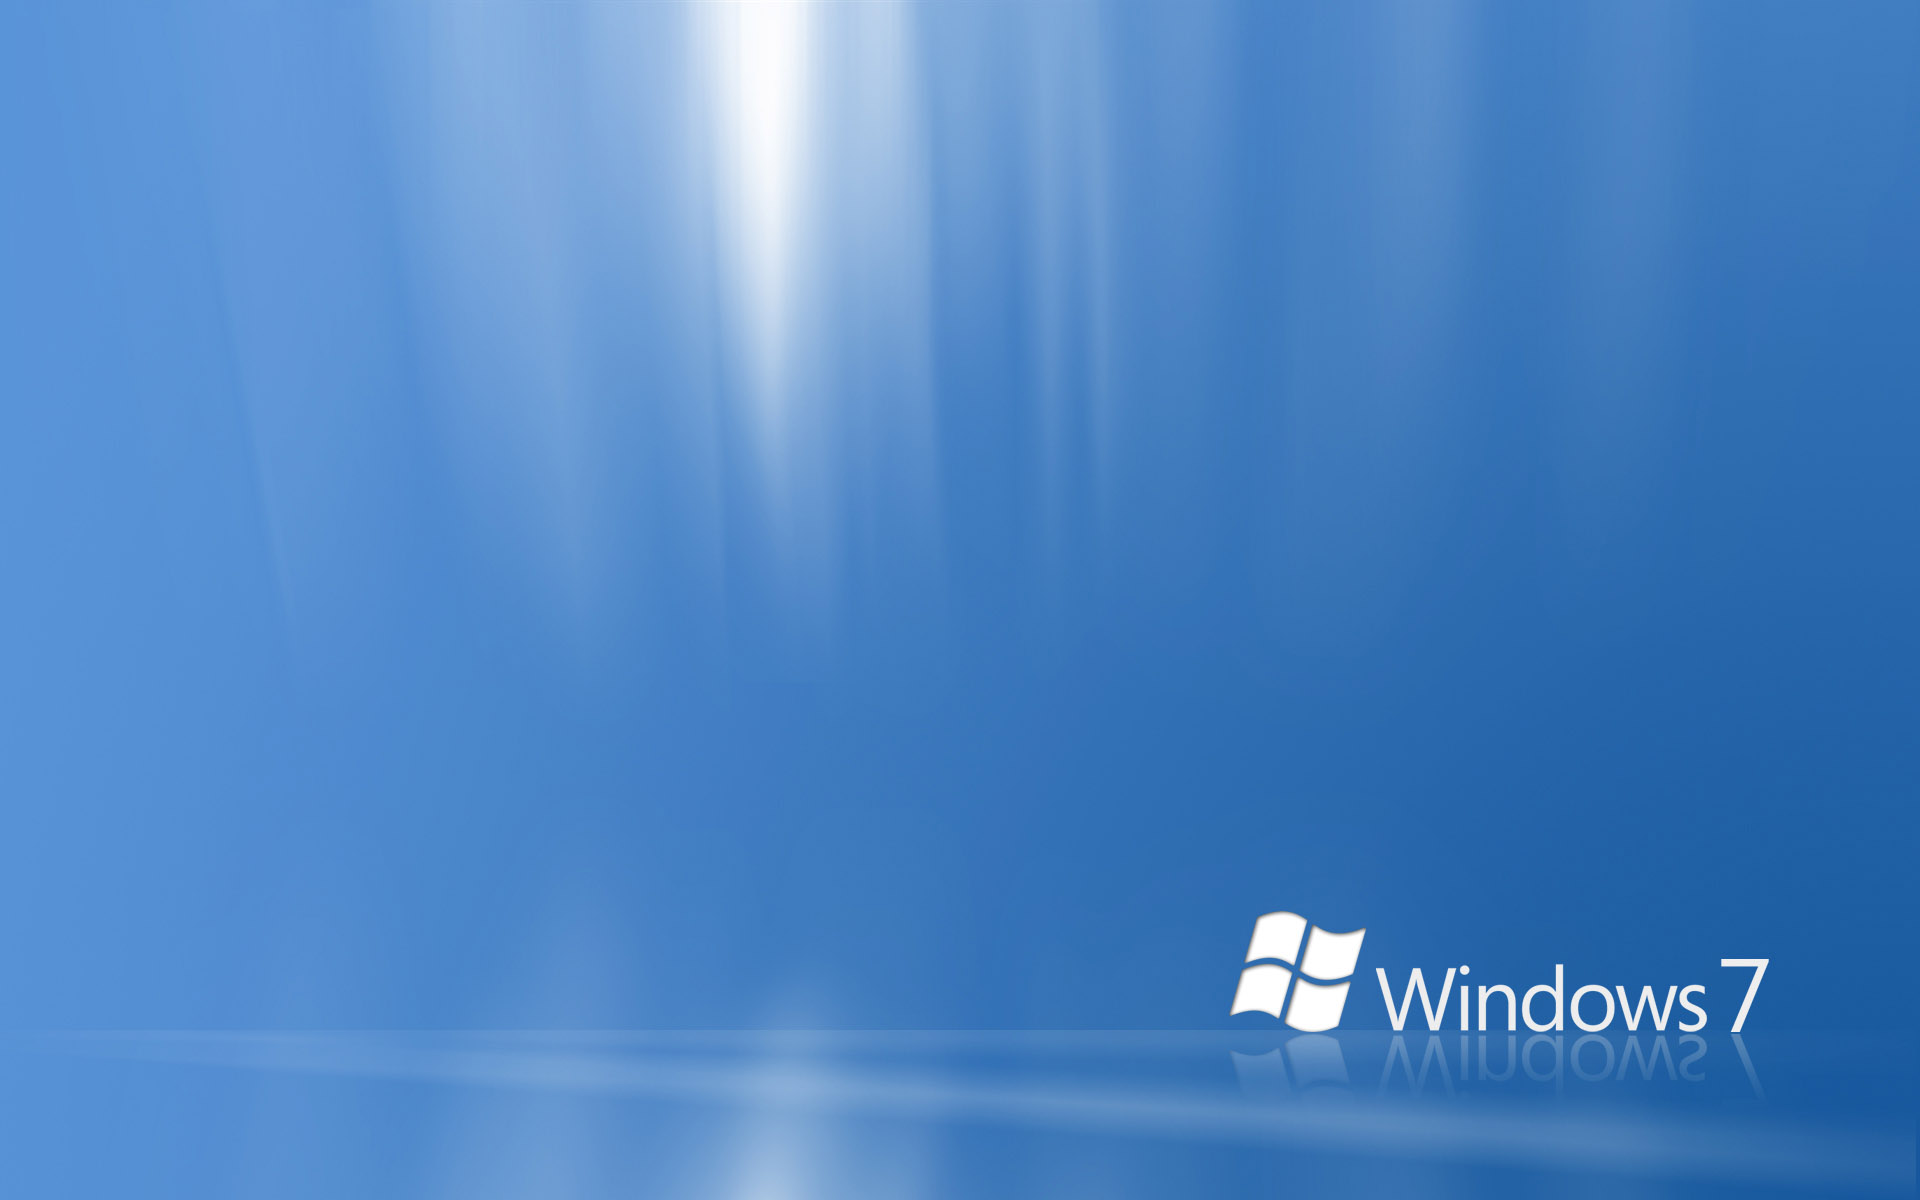 Windows 7 wallpapers | Wallpapers Inbox